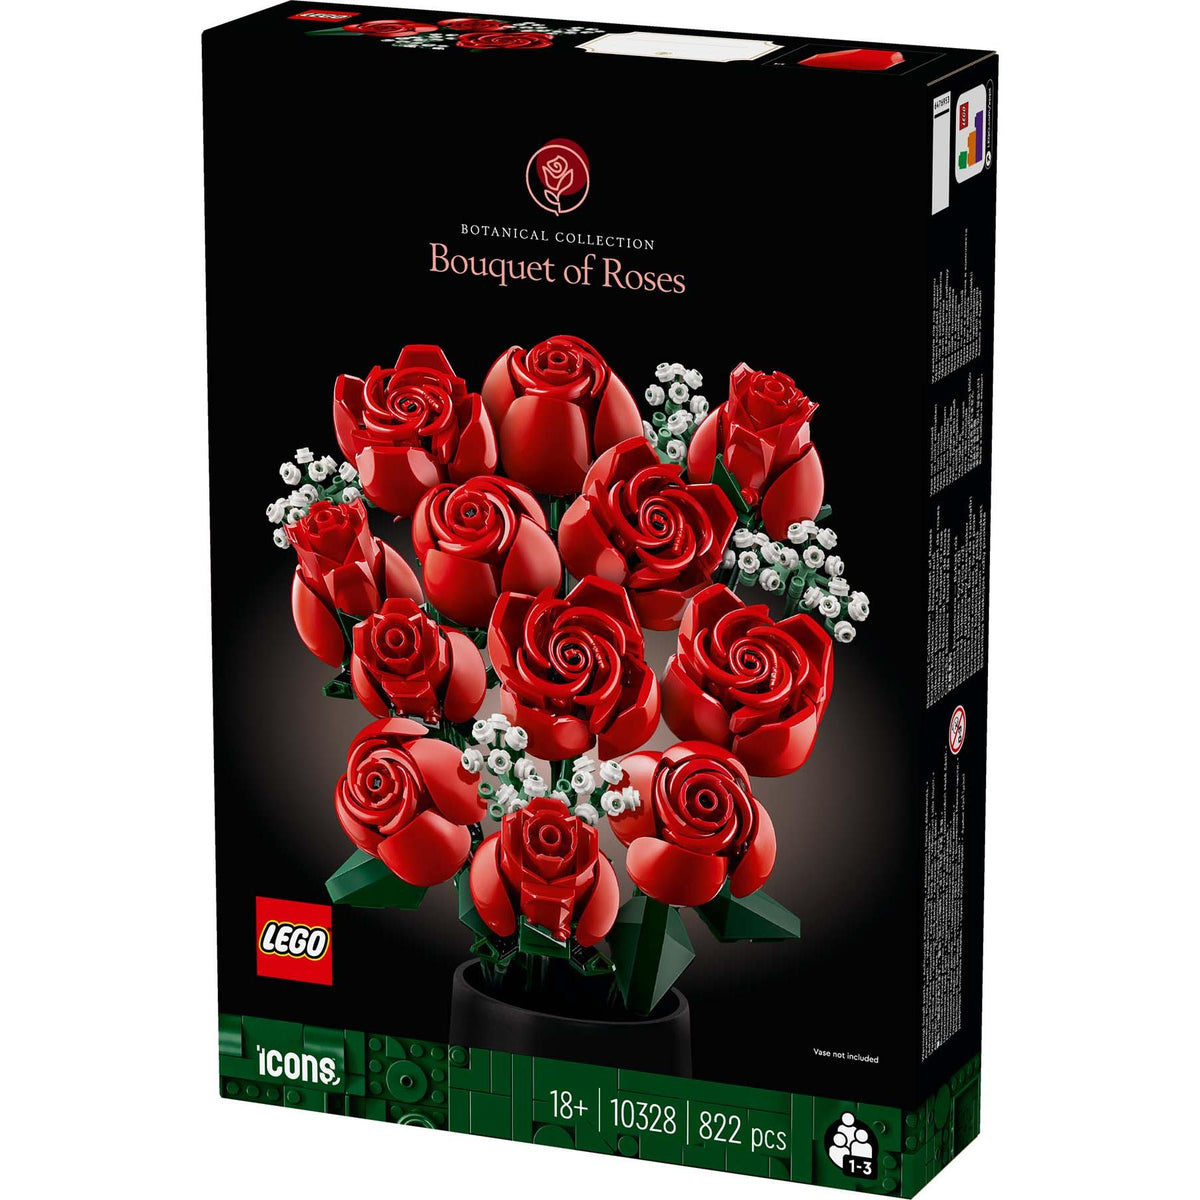 Le bouquet de roses - Brick Occasion